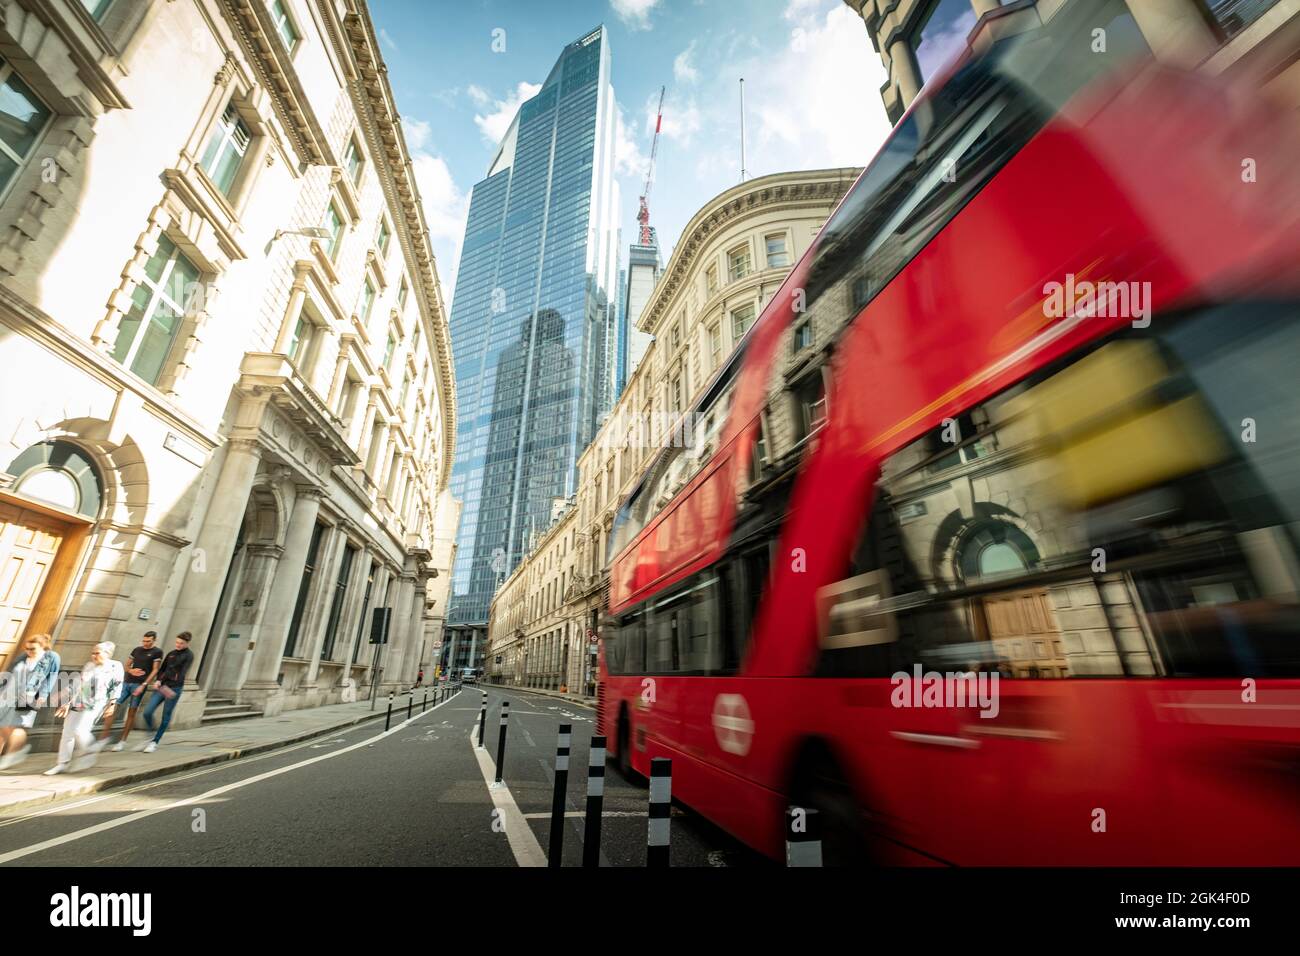 London- September 2021: City of London scene Stock Photo